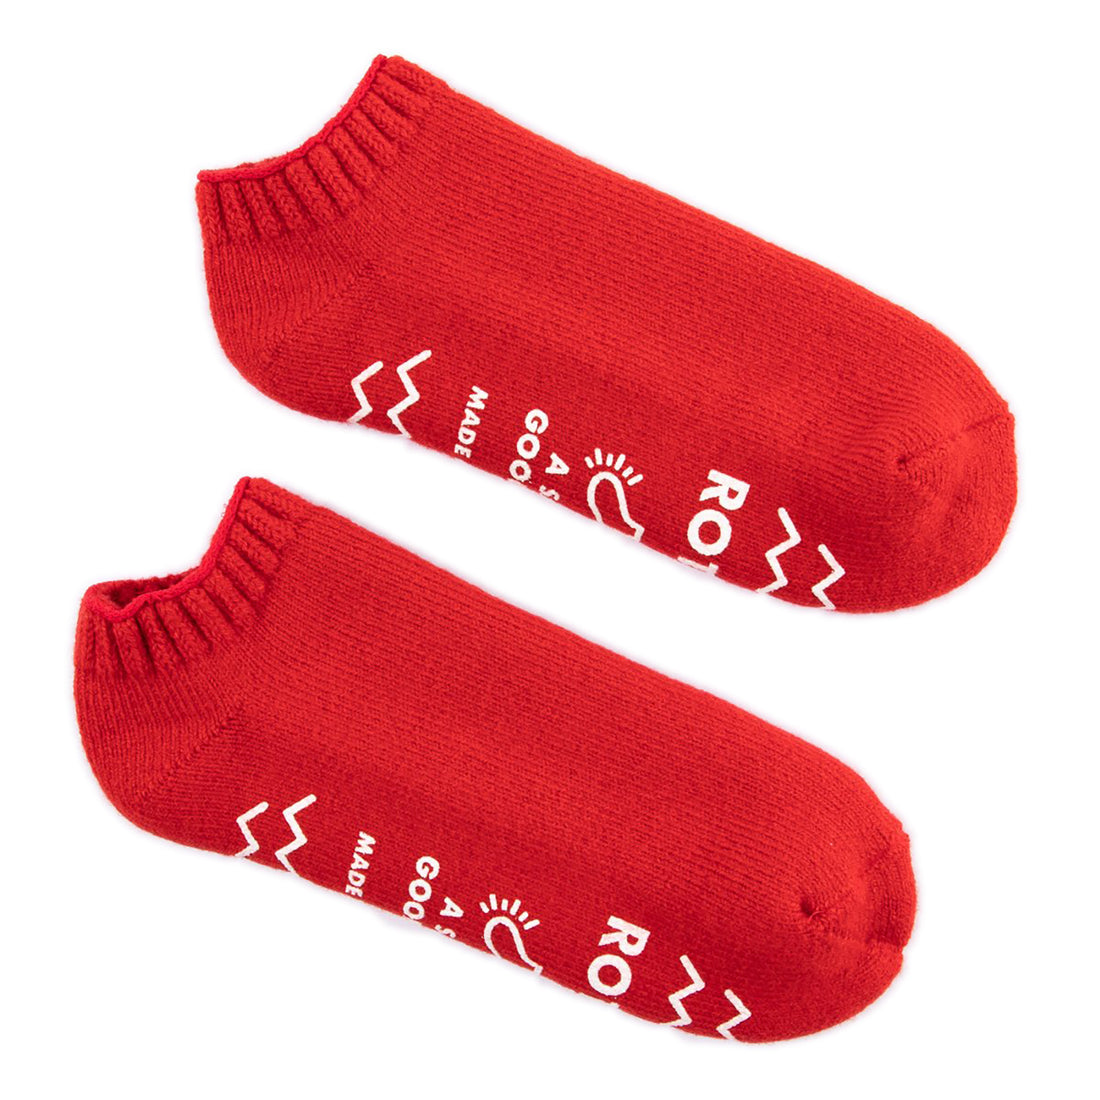 RoToTo Pile Socks Slipper - Red - Standard & Strange